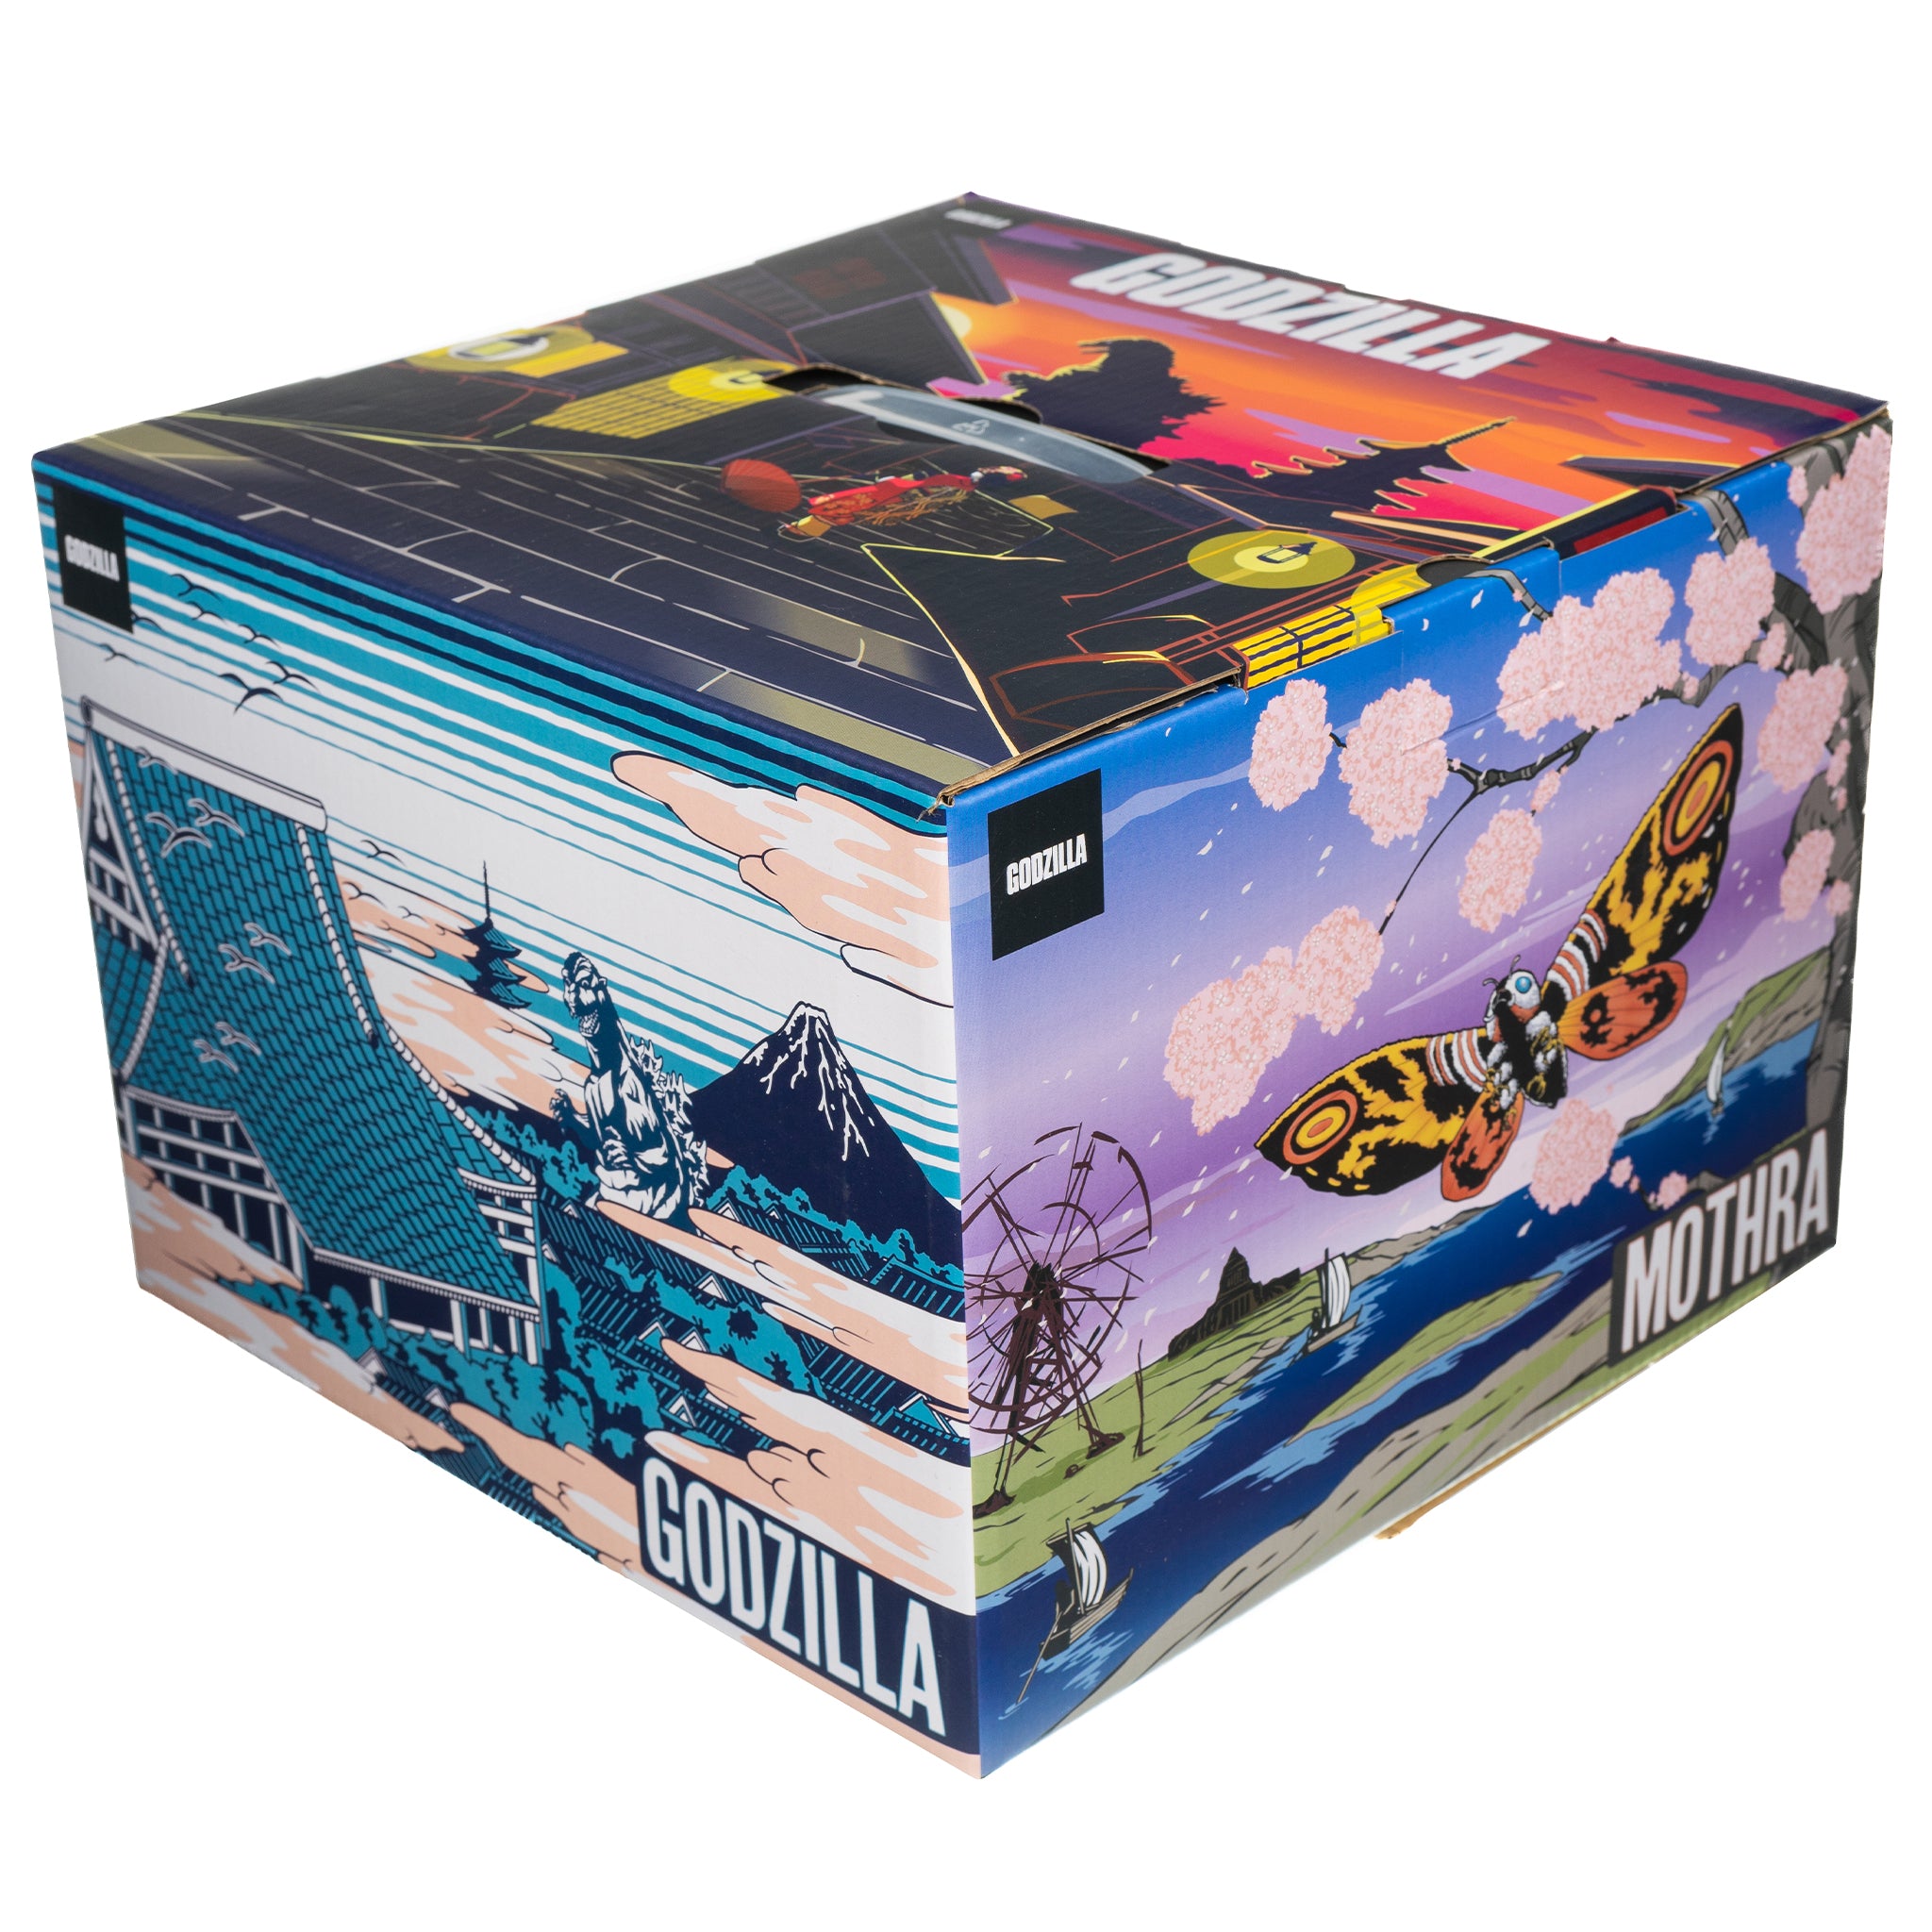 Godzilla Mystery Box – Stylin Boxes